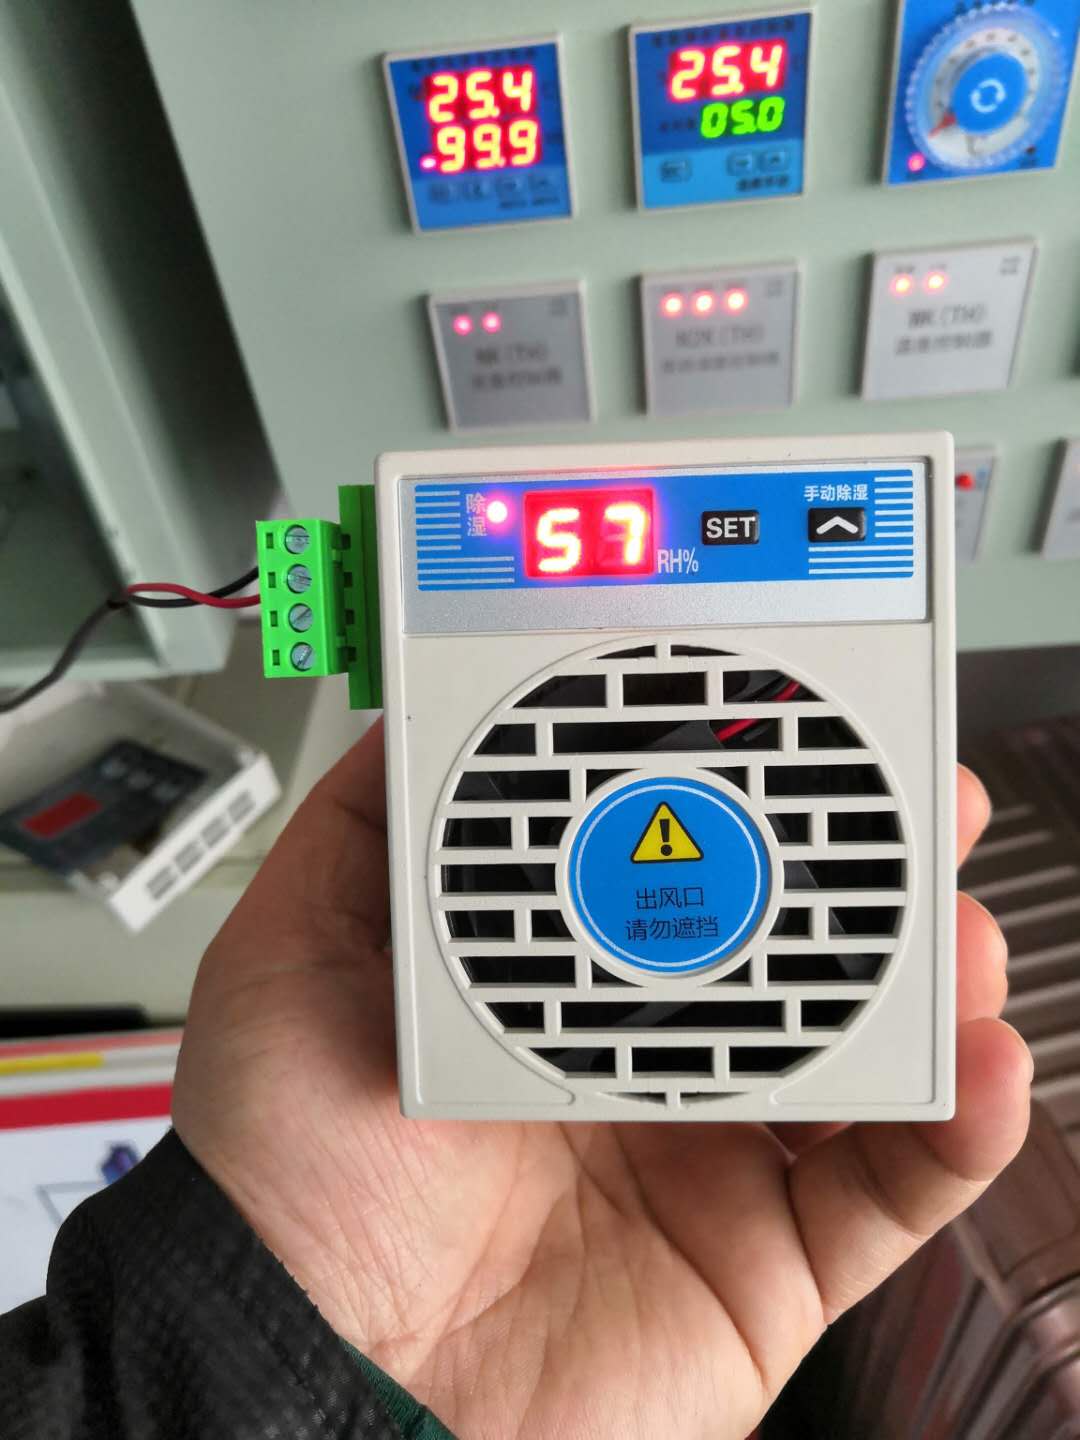 温湿度控制器XMT-7107GK2